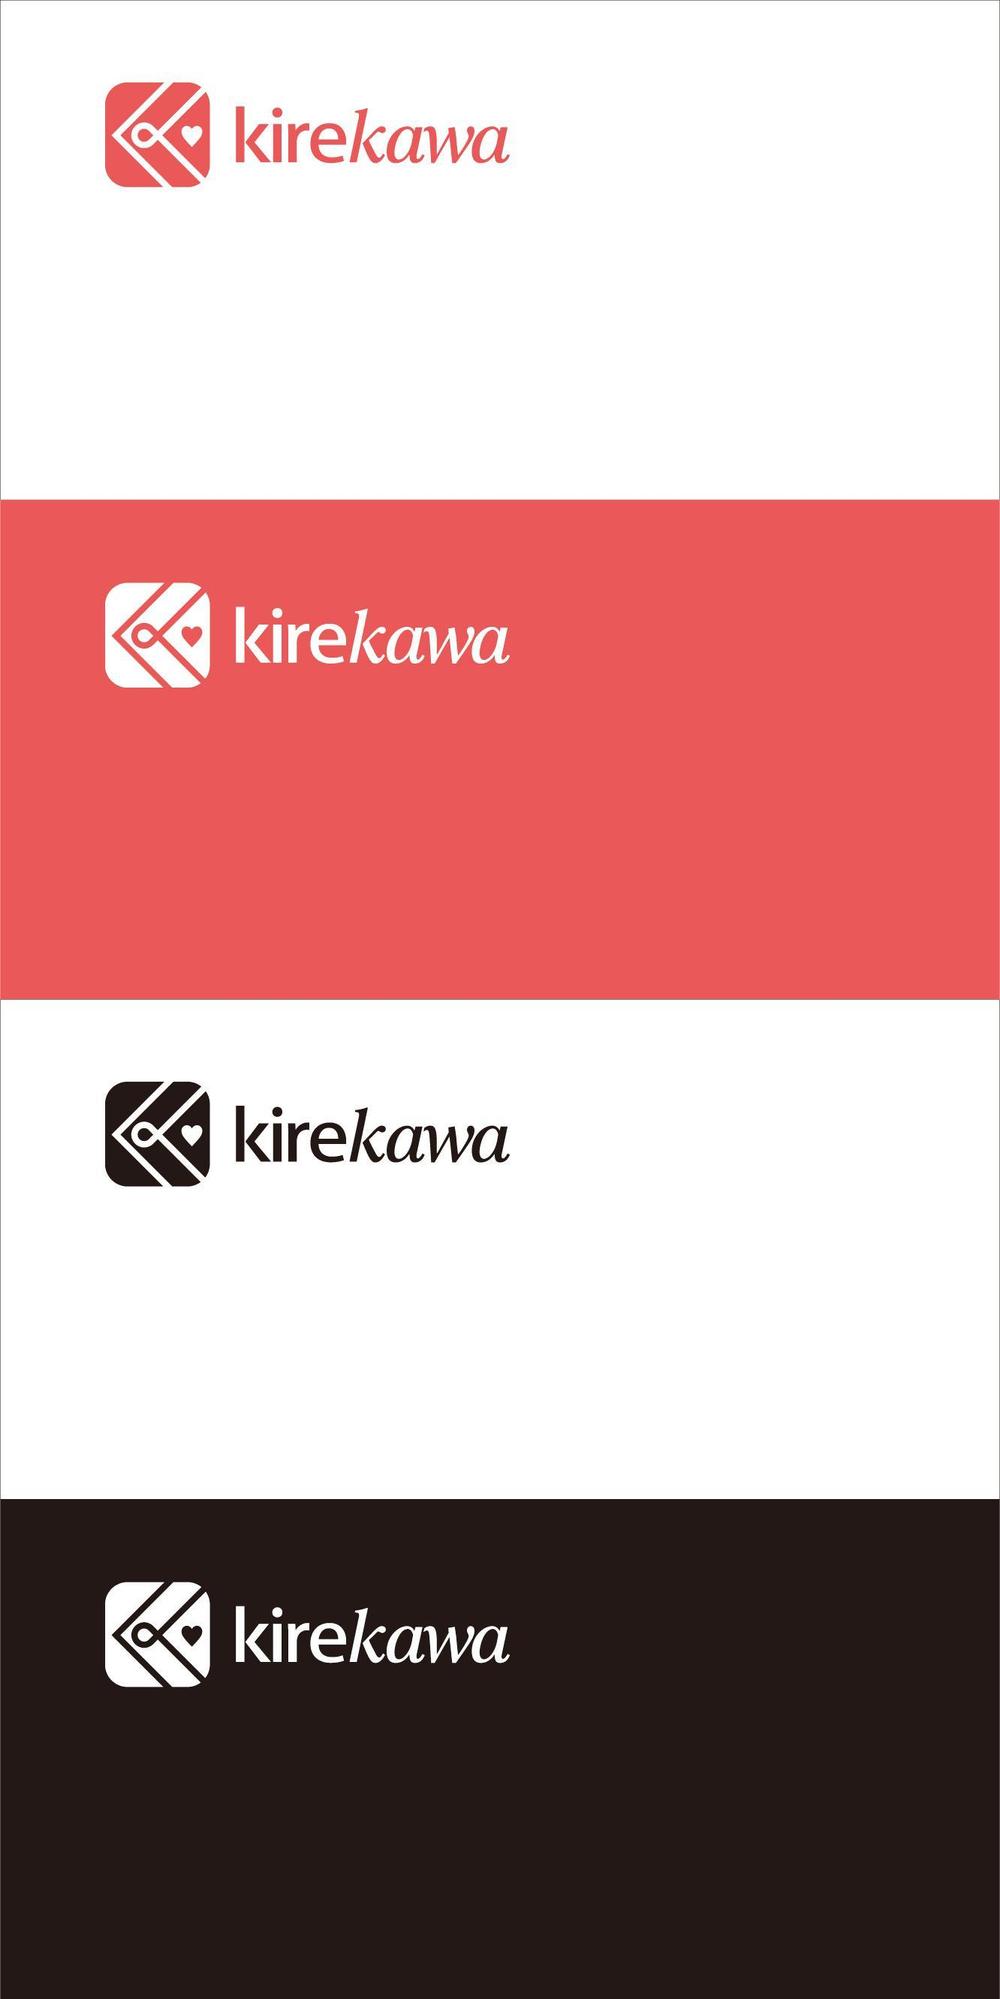 kirekawa3.jpg